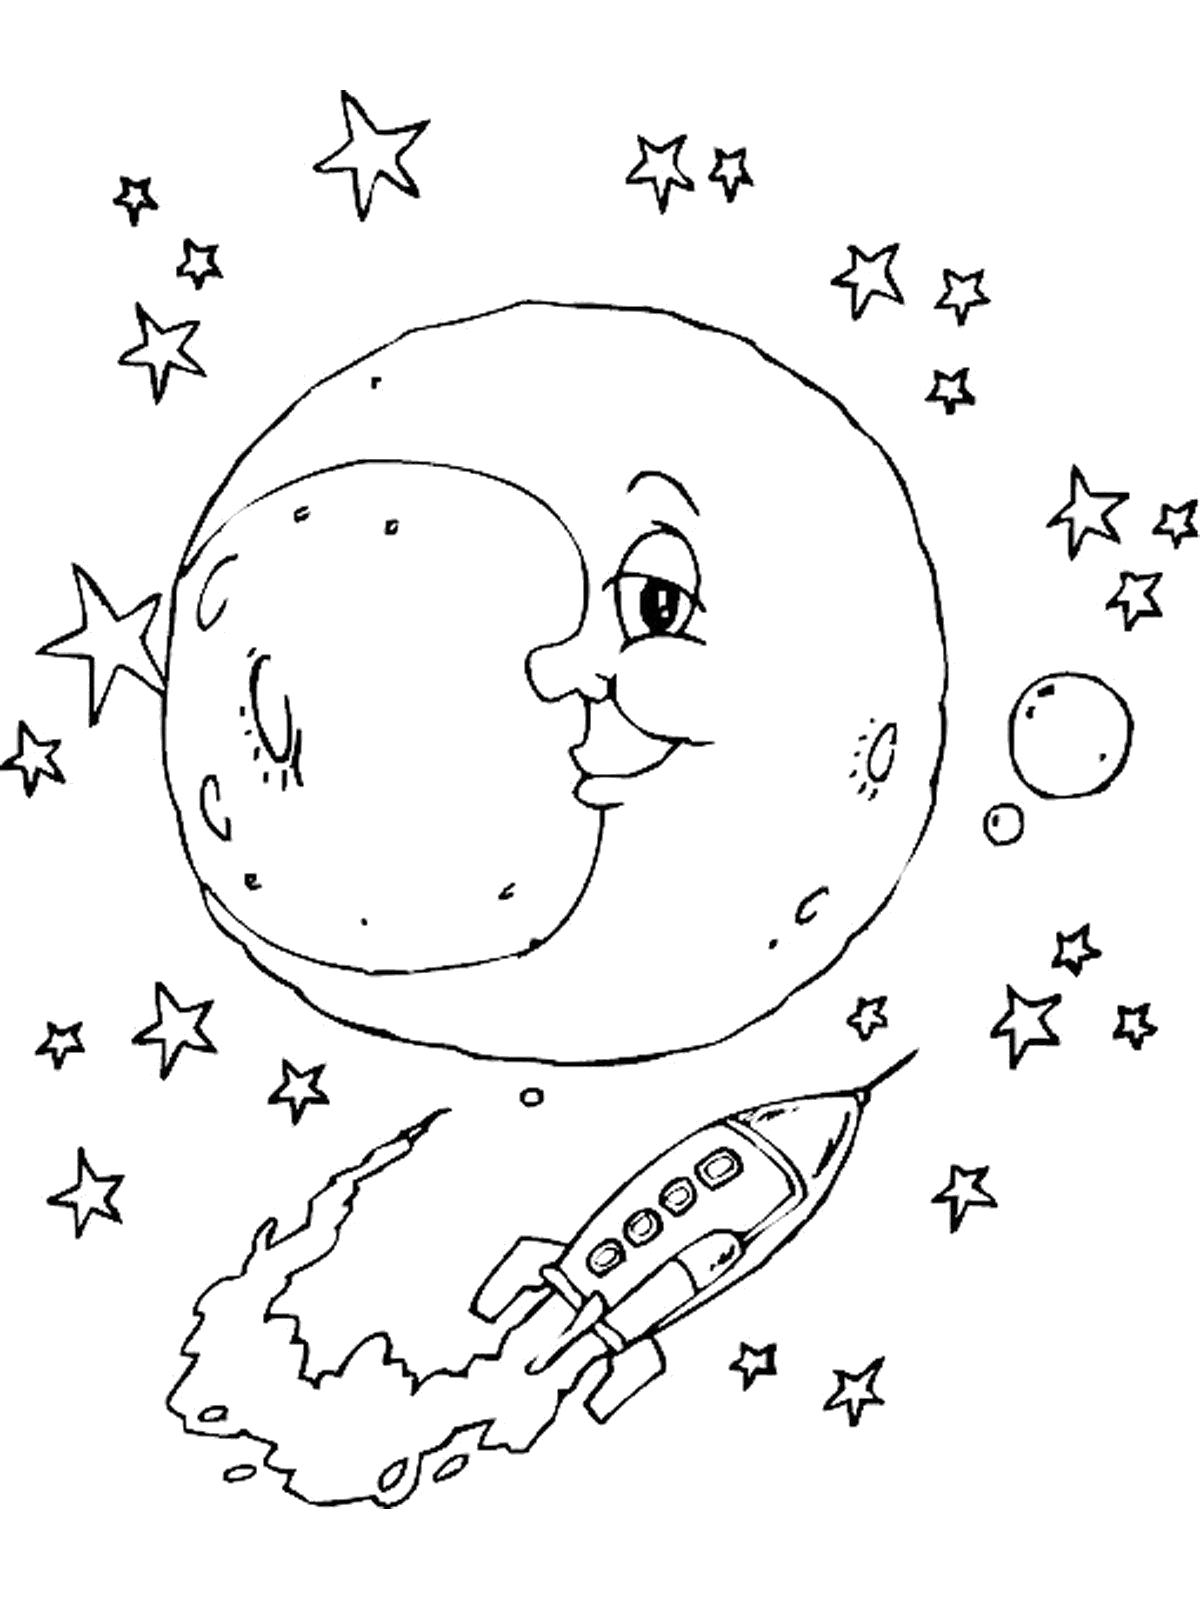 День космонавтики картинки раскраски. Раскраска. В космосе. Космос раскраска для детей. Раскраска космос и планеты. Луна раскраска.